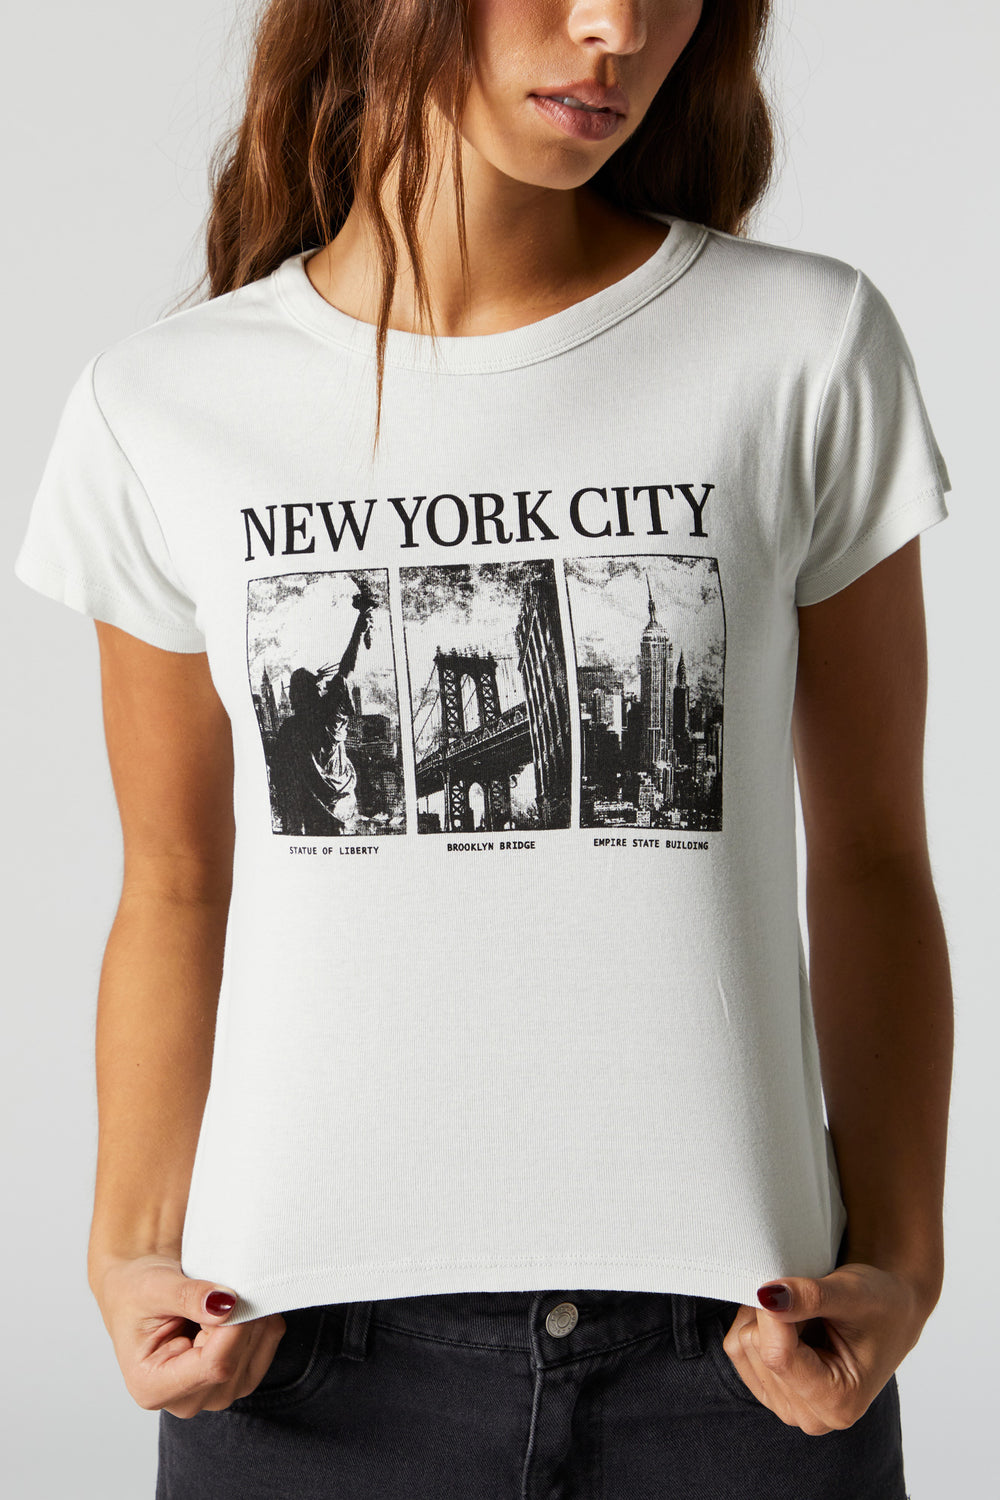 New York City Graphic T-Shirt New York City Graphic T-Shirt 2